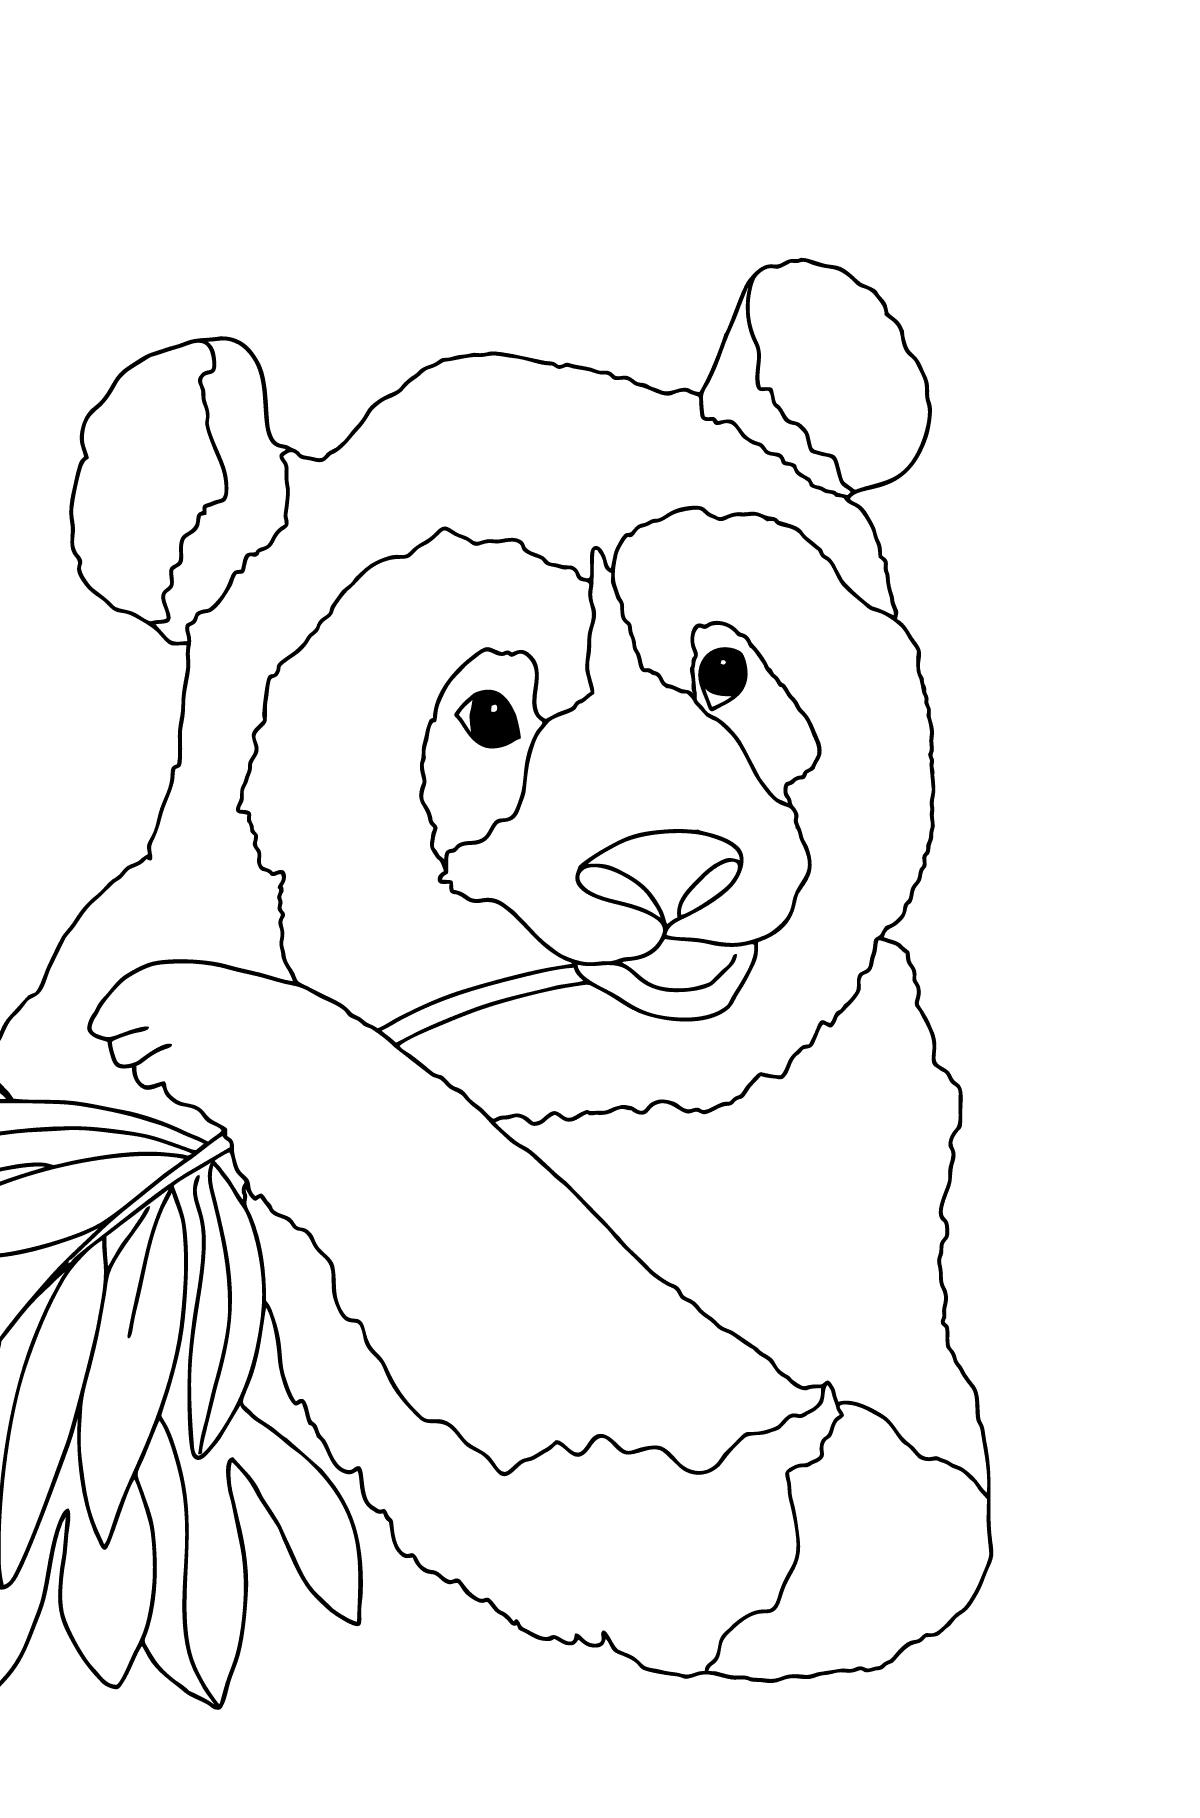 Desenho de panda fofo para colorir (difícil) - Imagens para Colorir para Crianças